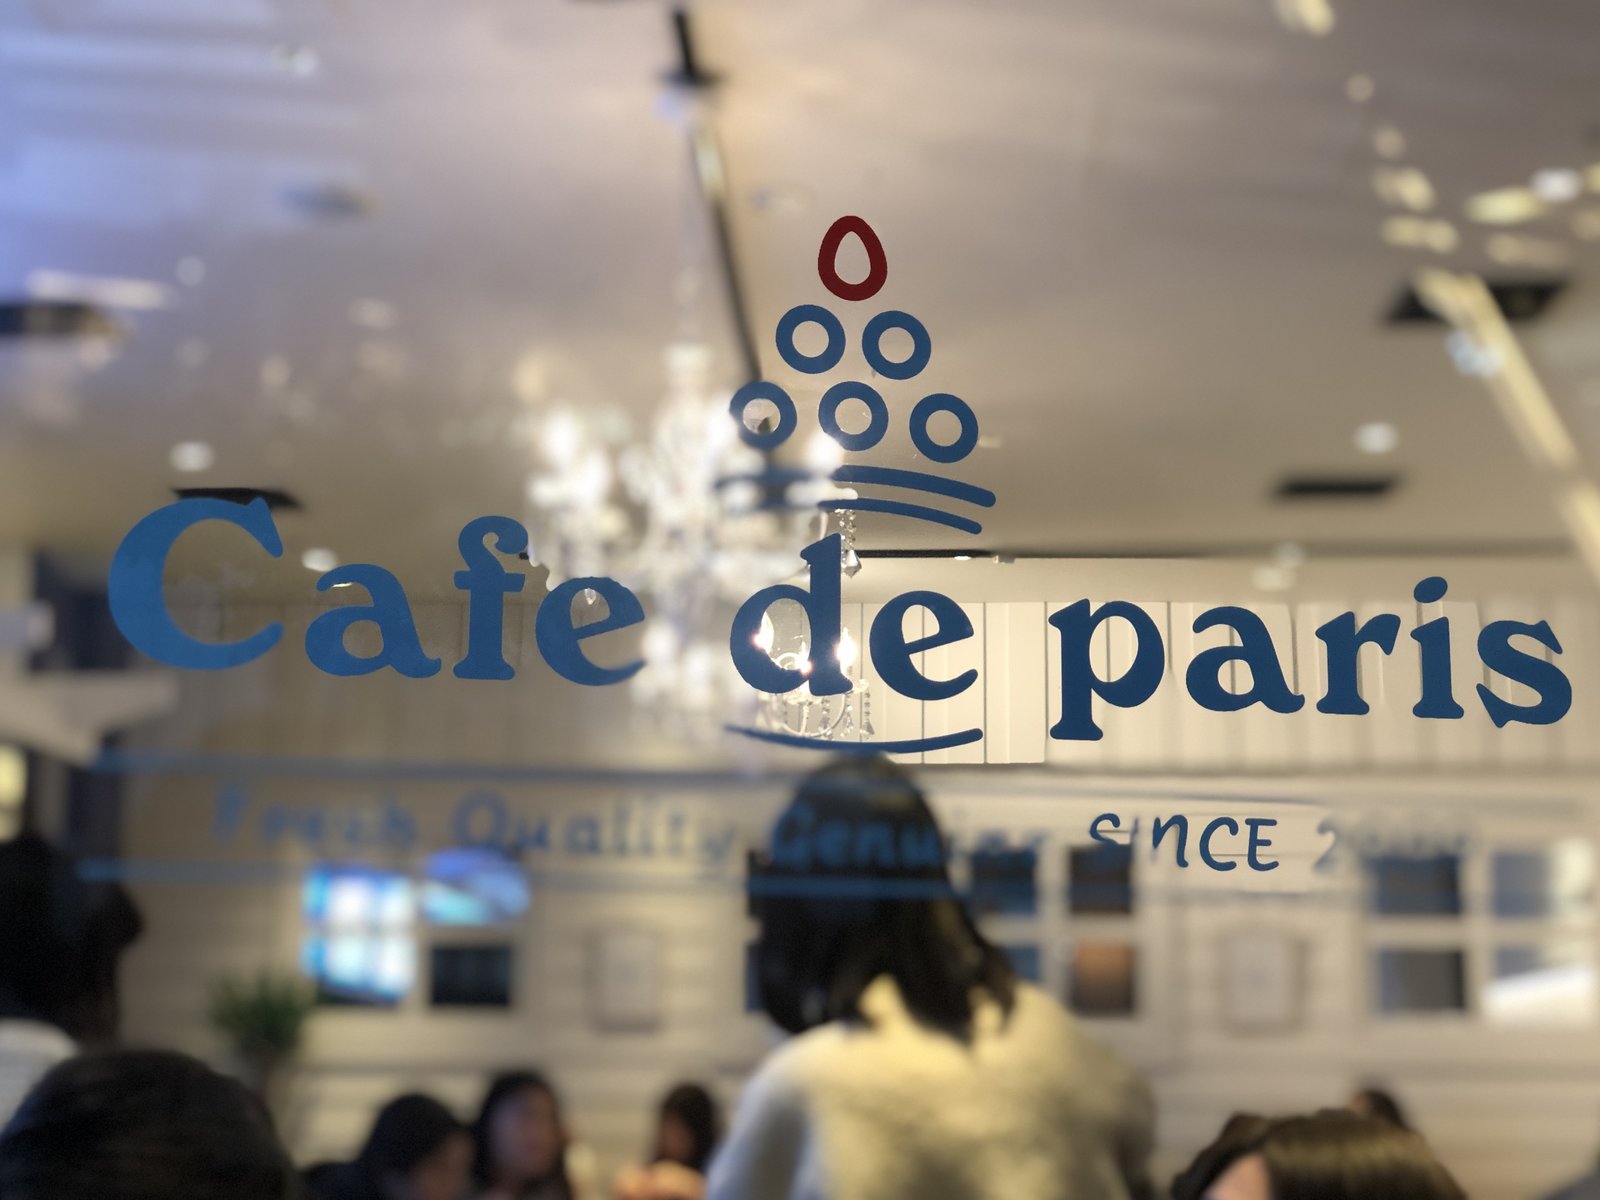 Cafe de paris（カフェ ド パリ）